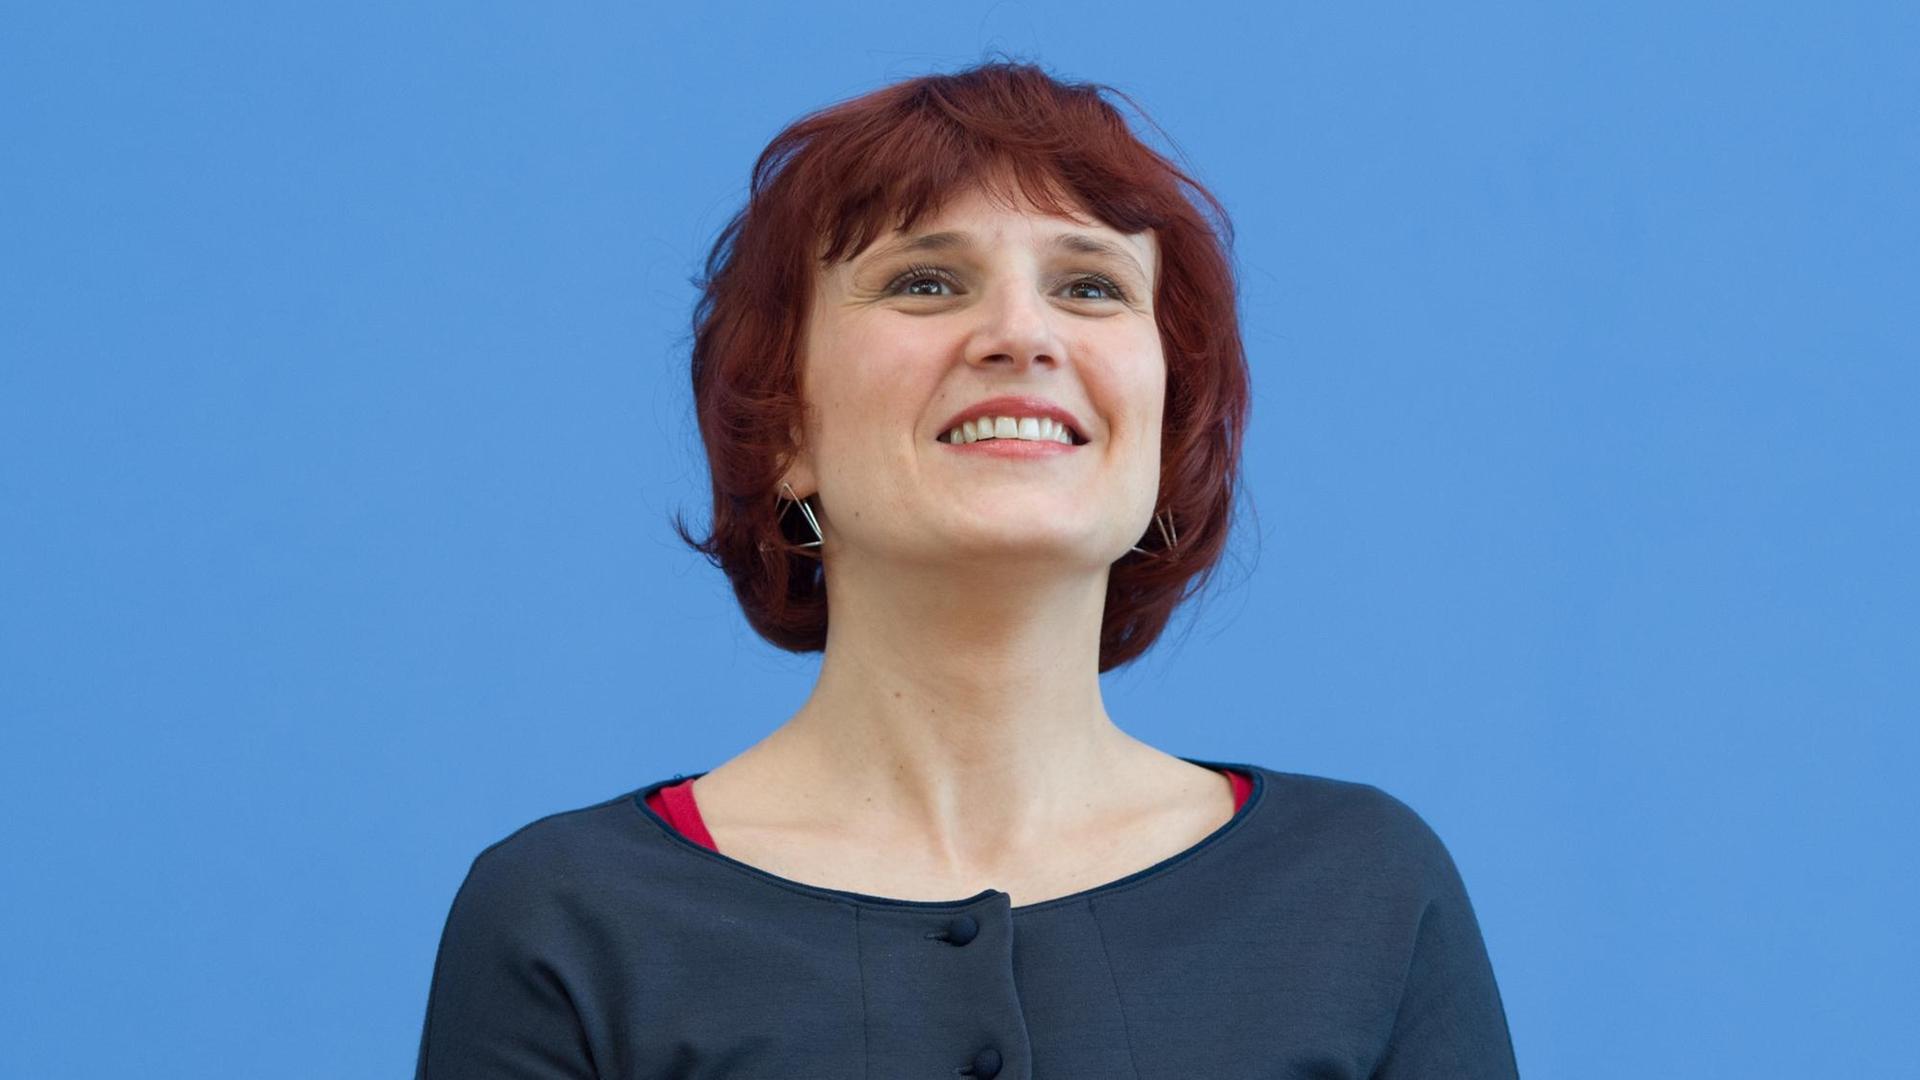 Die Vorsitzende der Partei Die Linke, Katja Kipping, aufgenommen am 27.03.2017 in Berlin während einer Pressekonferenz, Thema war das Ergebnis der Landtagswahl im Saarland.